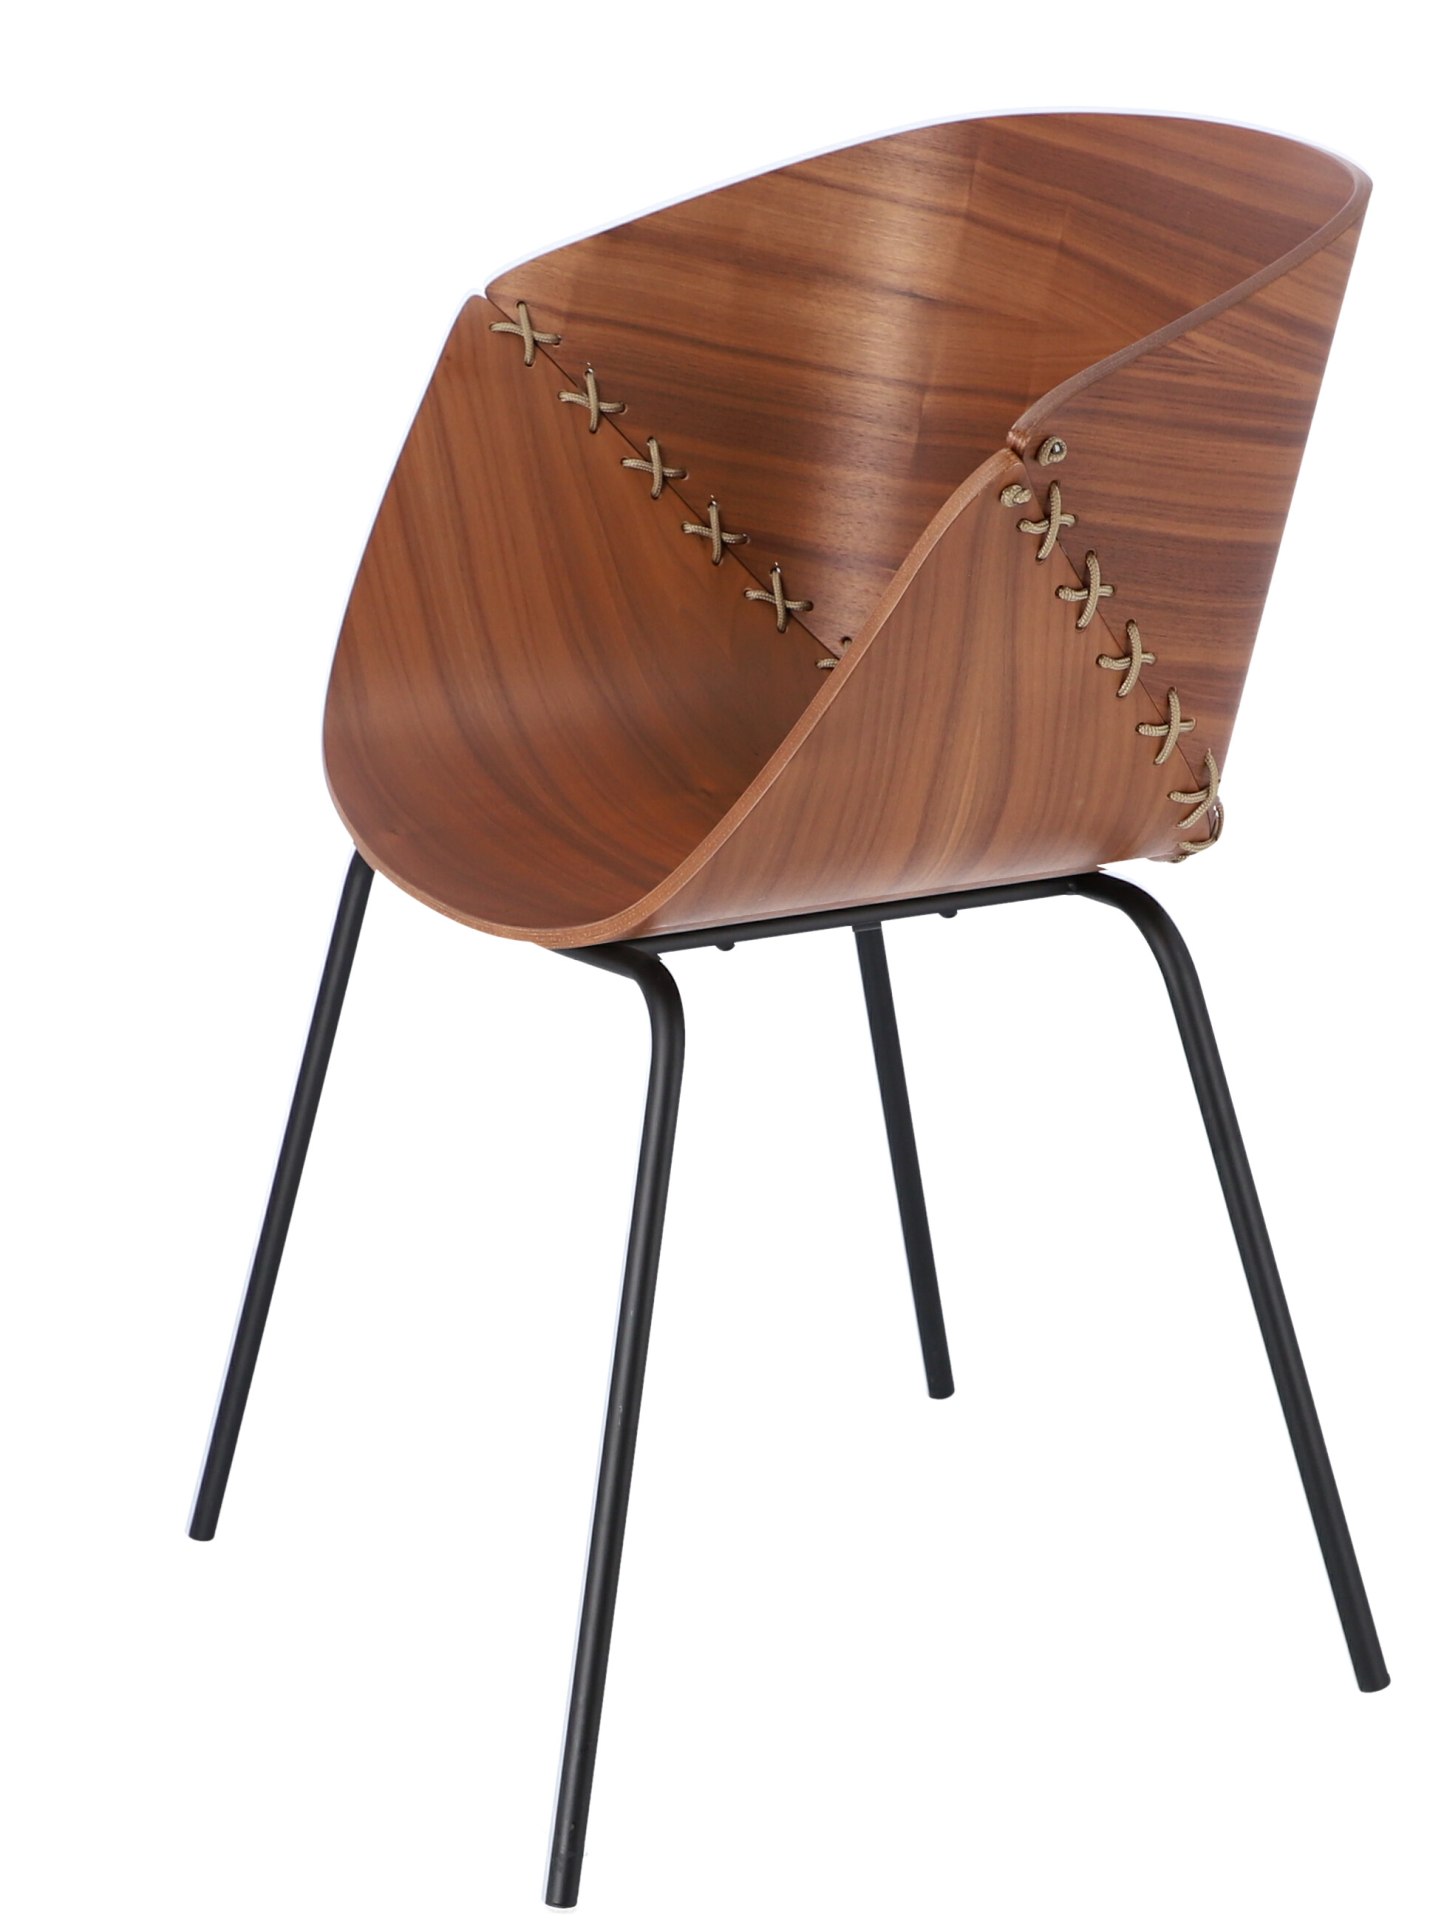 Der Stuhl Gossip überzeugt mit seinem besonderen Design. Das Gestell ist aus Metall und die Sitzschale aus Eichenfurnier in einer Nussbaum Optik.